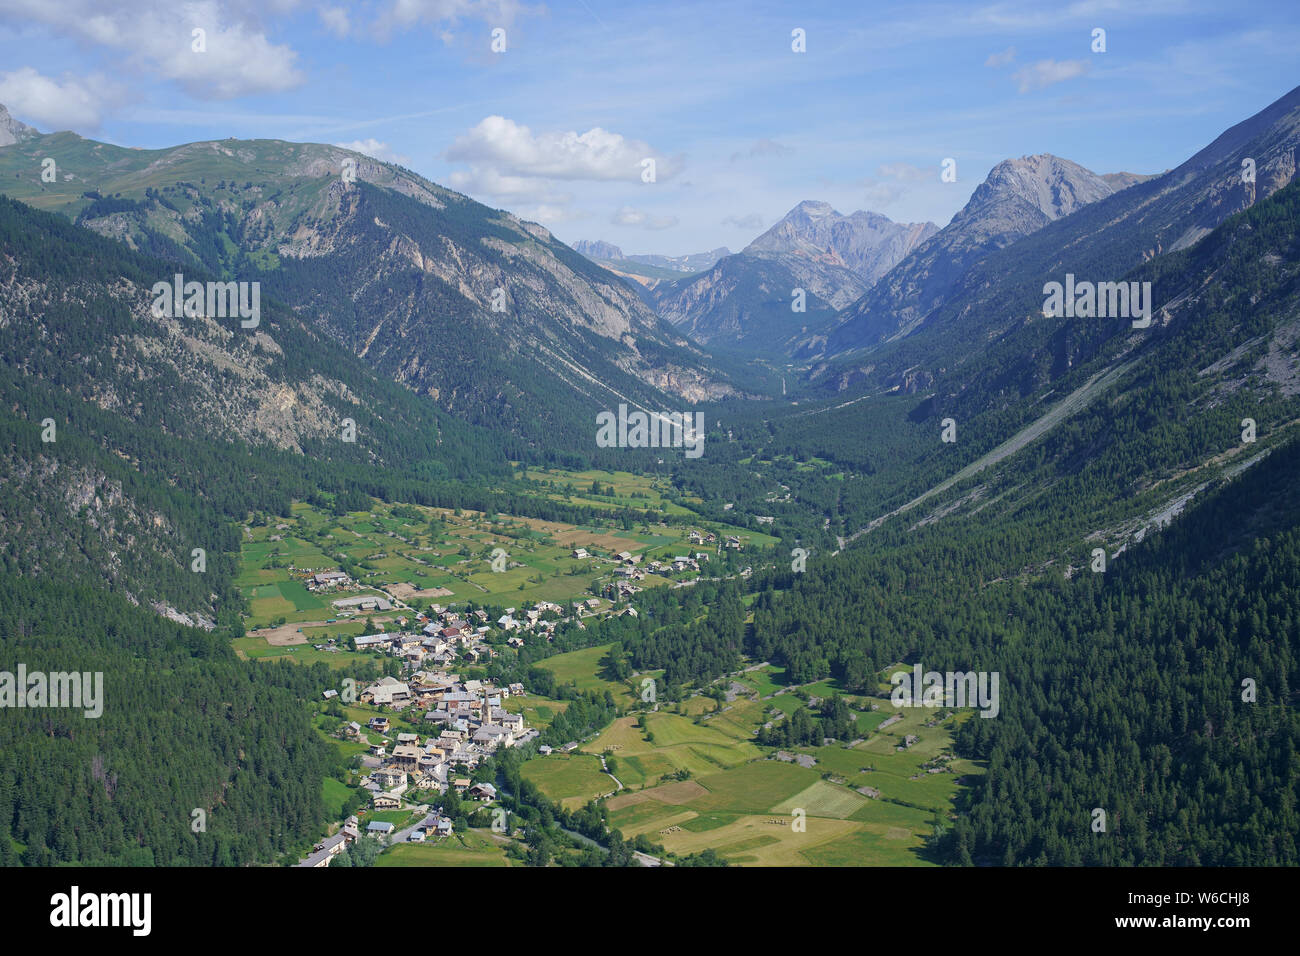 VISTA AEREA. Valle della Clarée incontaminata con il villaggio di Val-des-Prés. Hautes-Alpes, Francia. Foto Stock